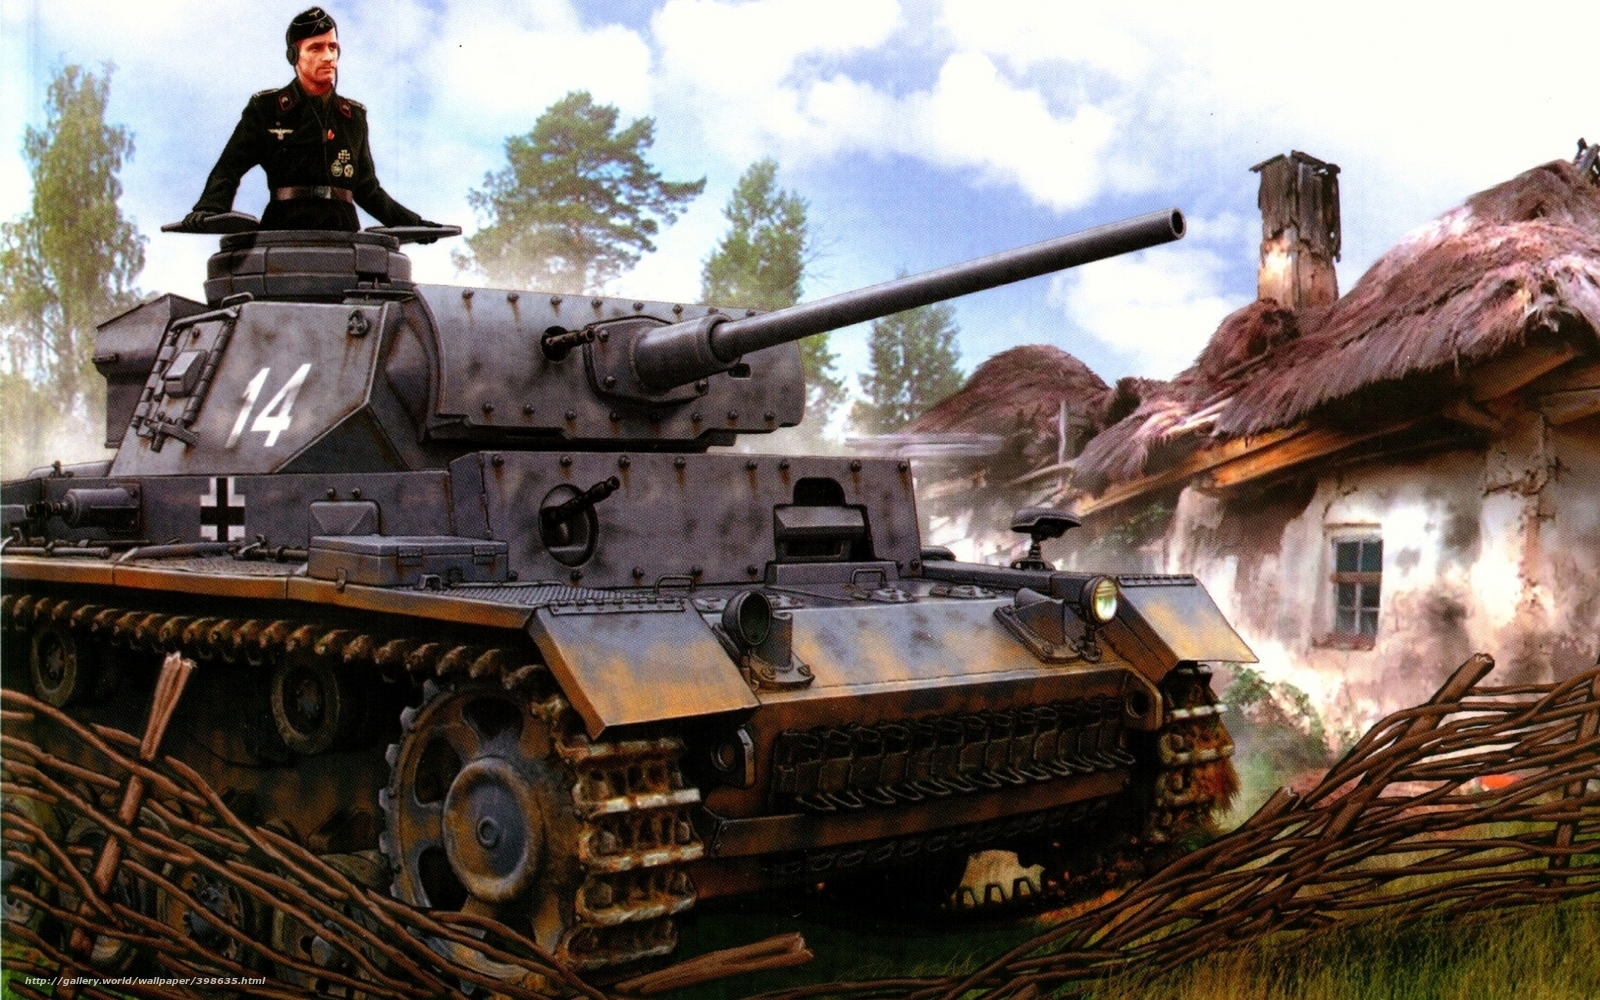 Wallpaper Panzer Iii Ww2 Military Art Desktop